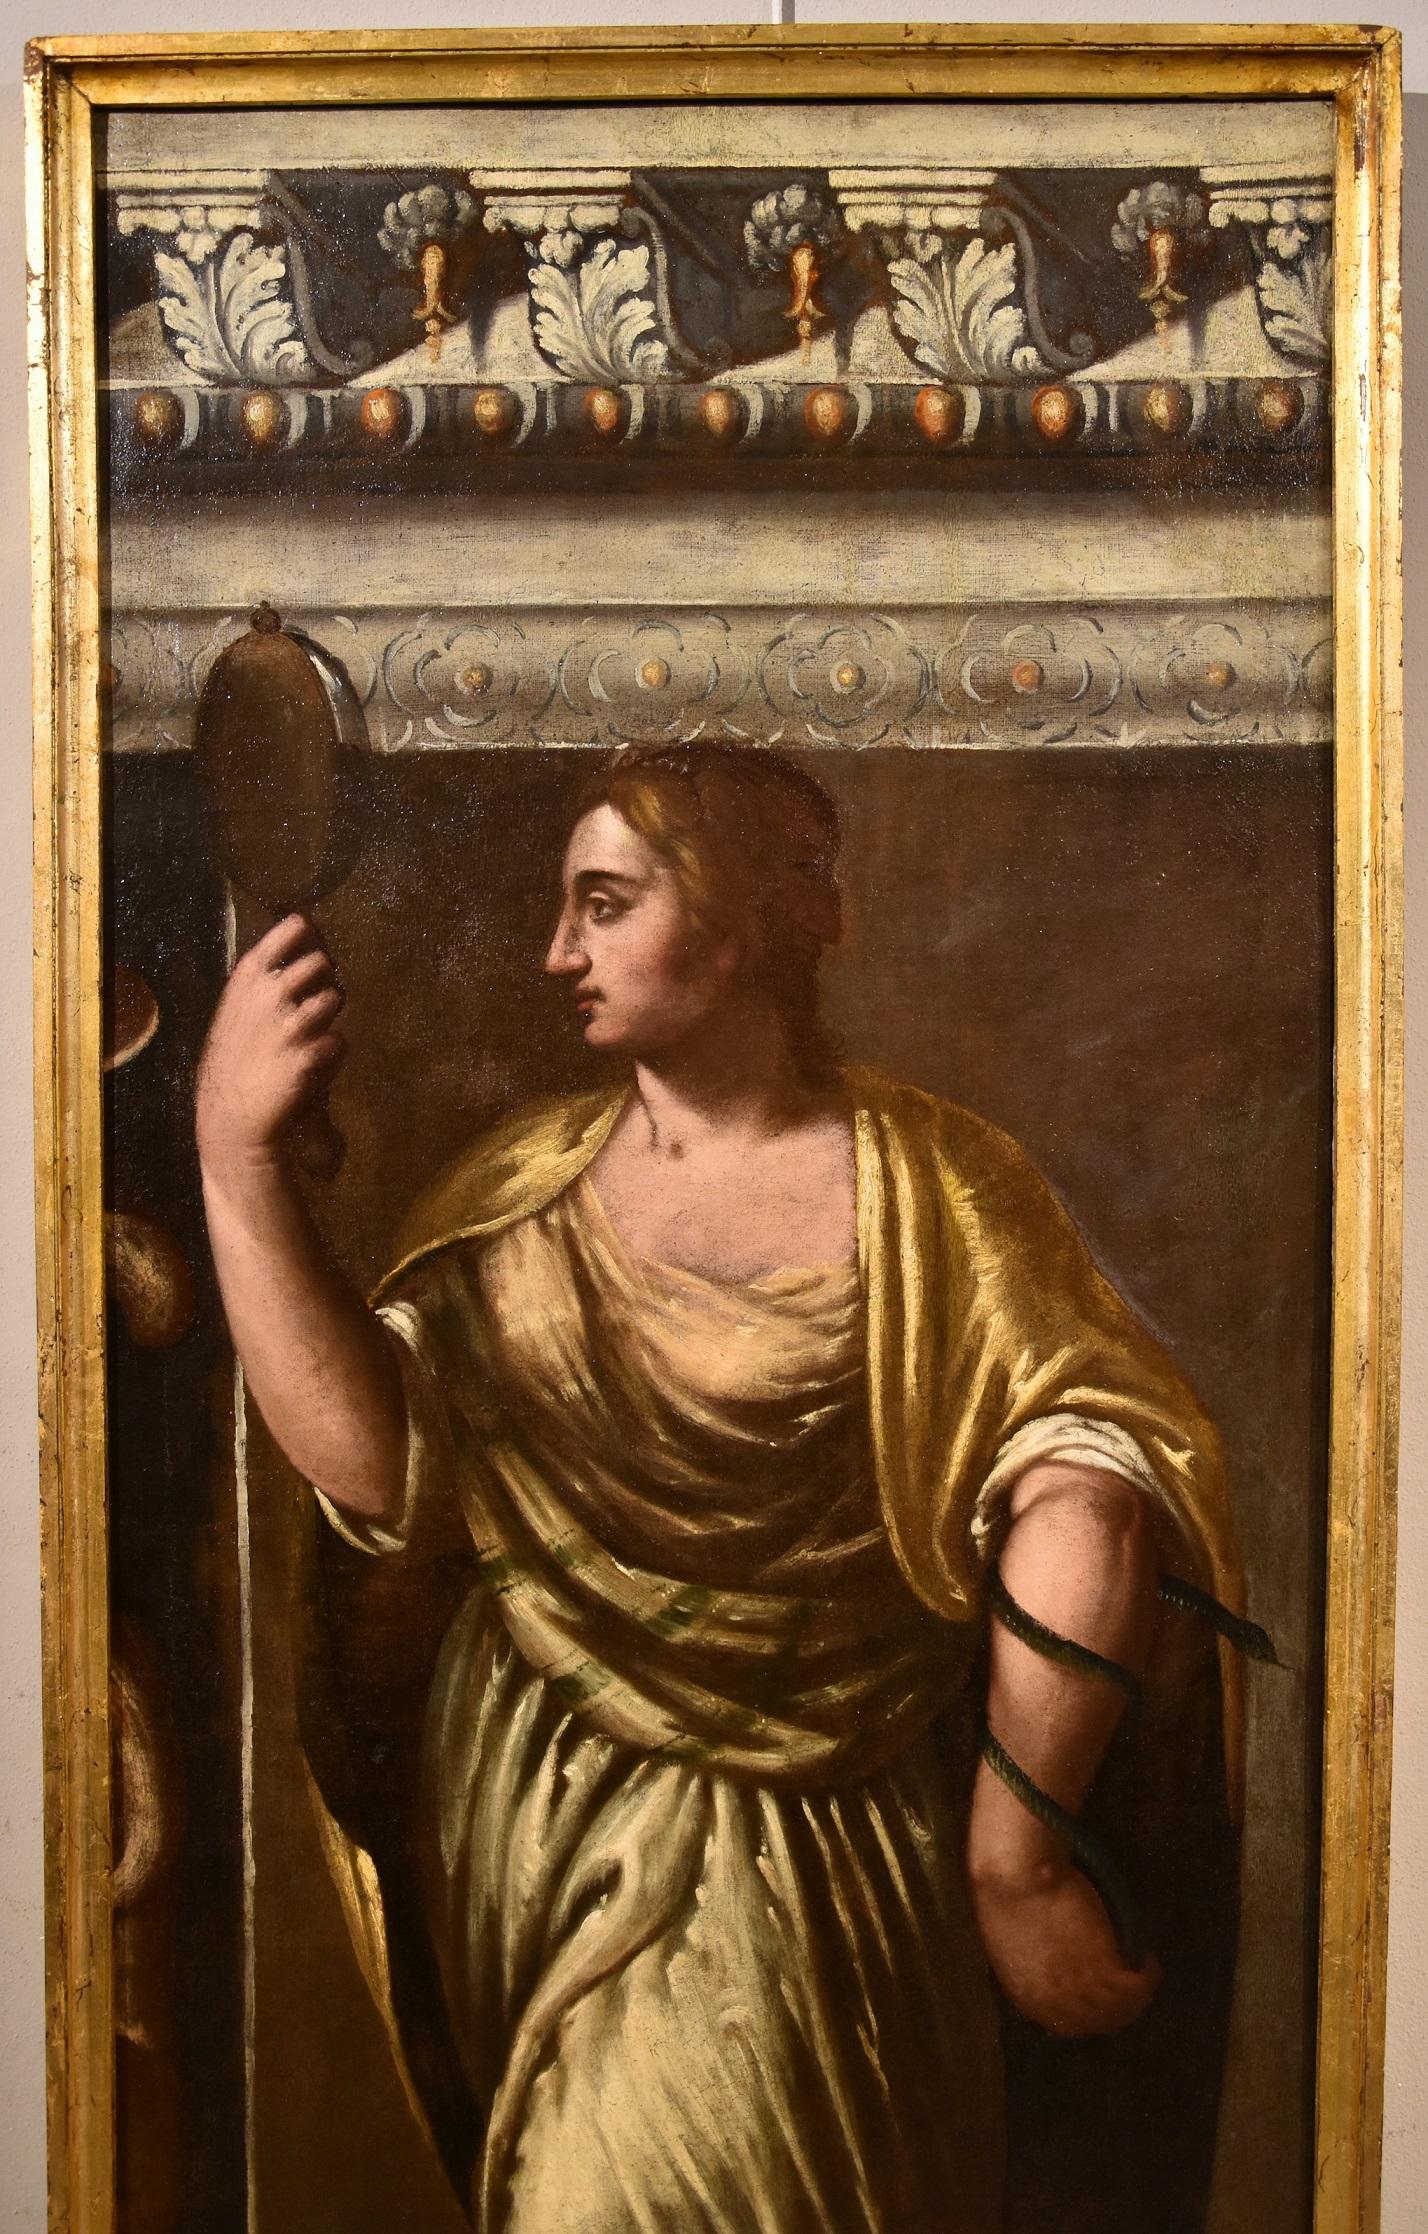 Allegory Weisheit Stella Gemälde Öl auf Leinwand Alter Meister 16./17. Jahrhundert Italien Kunst (Braun), Portrait Painting, von Giacomo Stella (Brescia 1545 - Rome 1630)